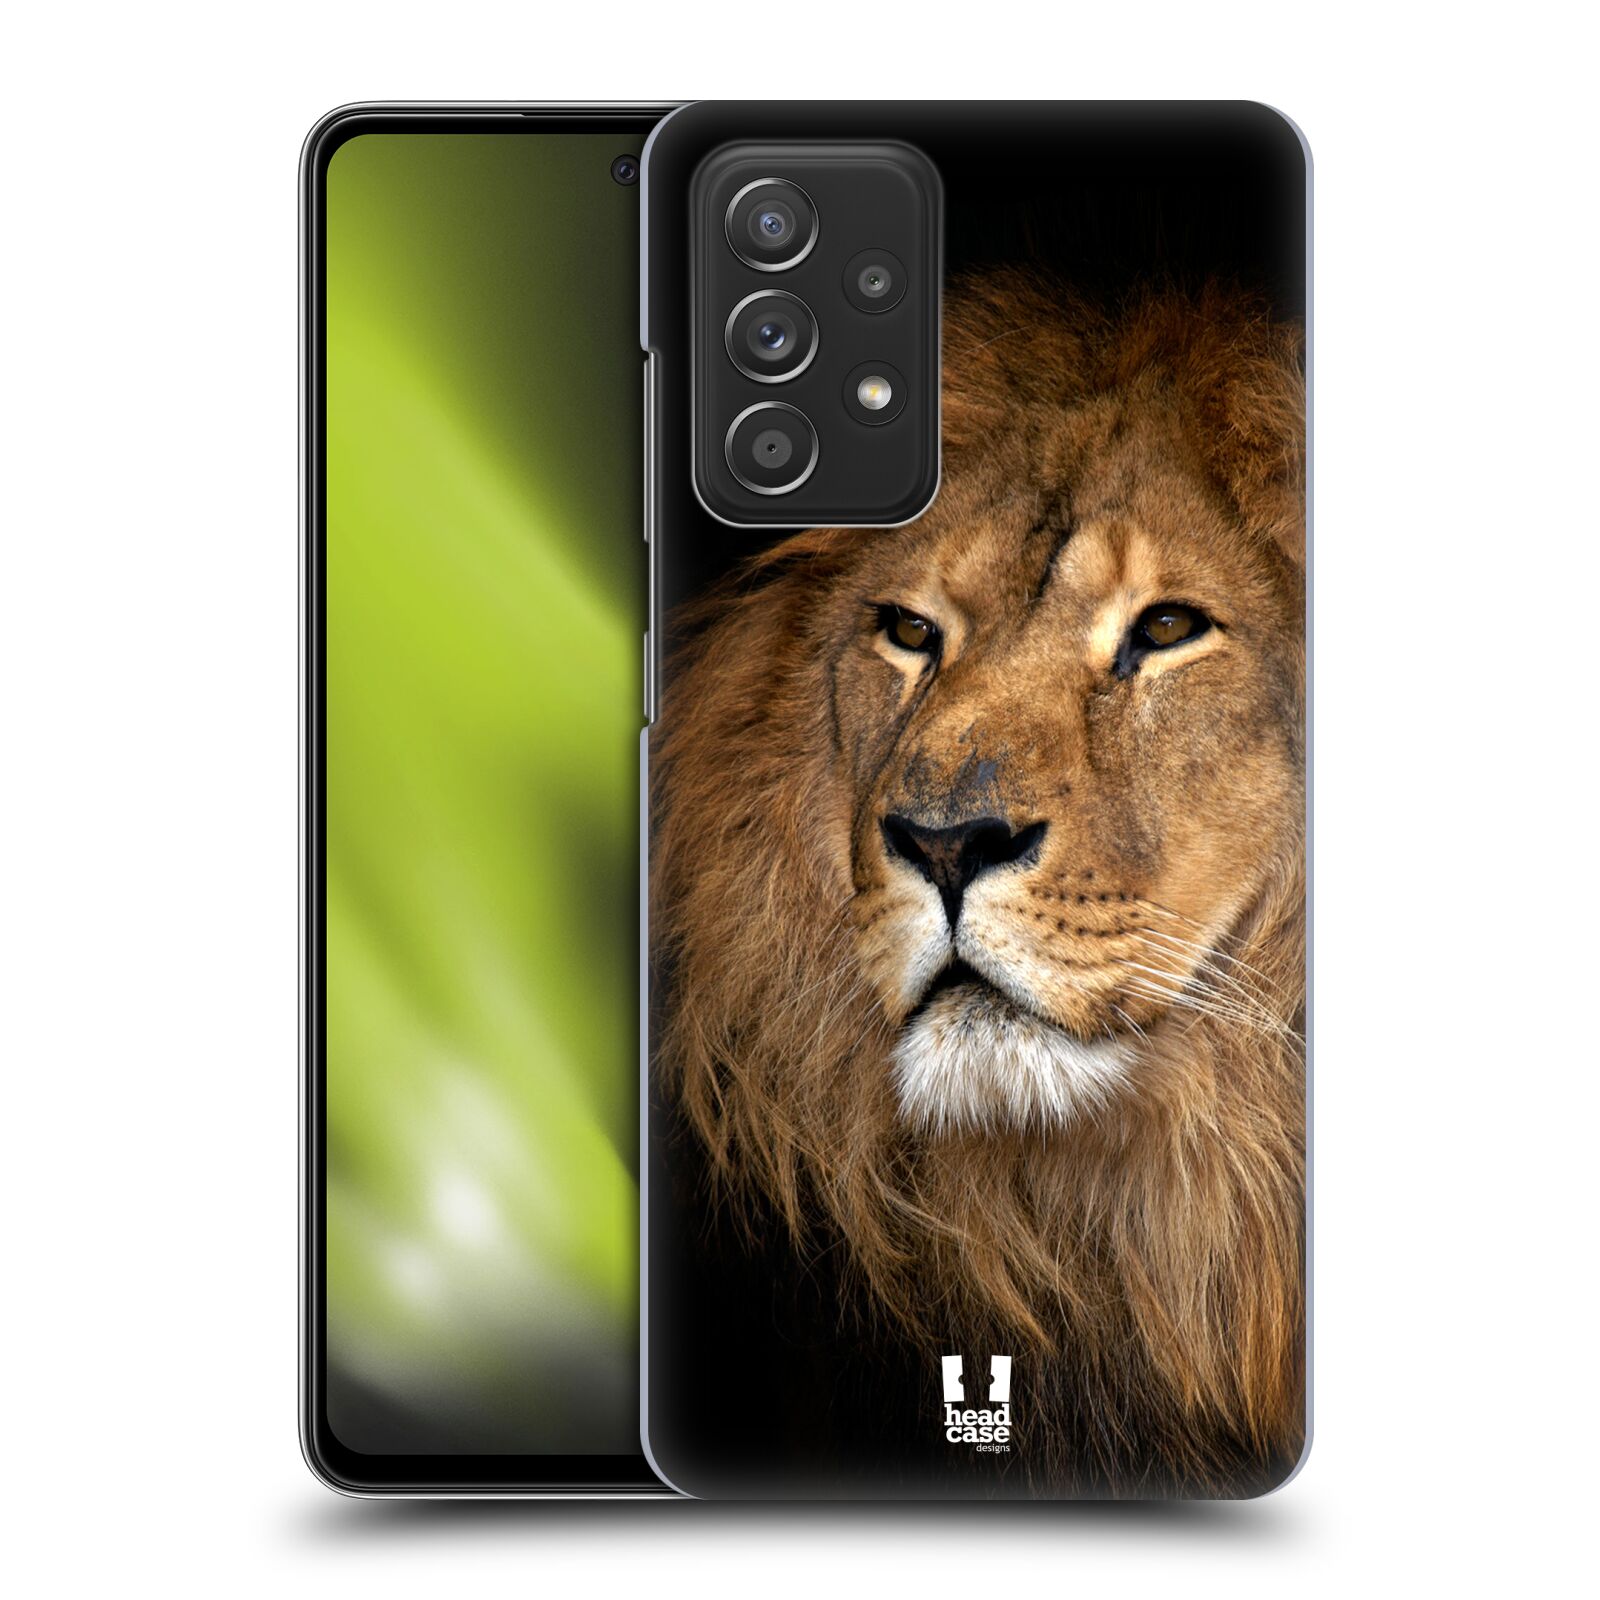 Zadní obal pro mobil Samsung Galaxy A52 / A52s / A52 5G - HEAD CASE - Svět zvířat král zvířat Lev